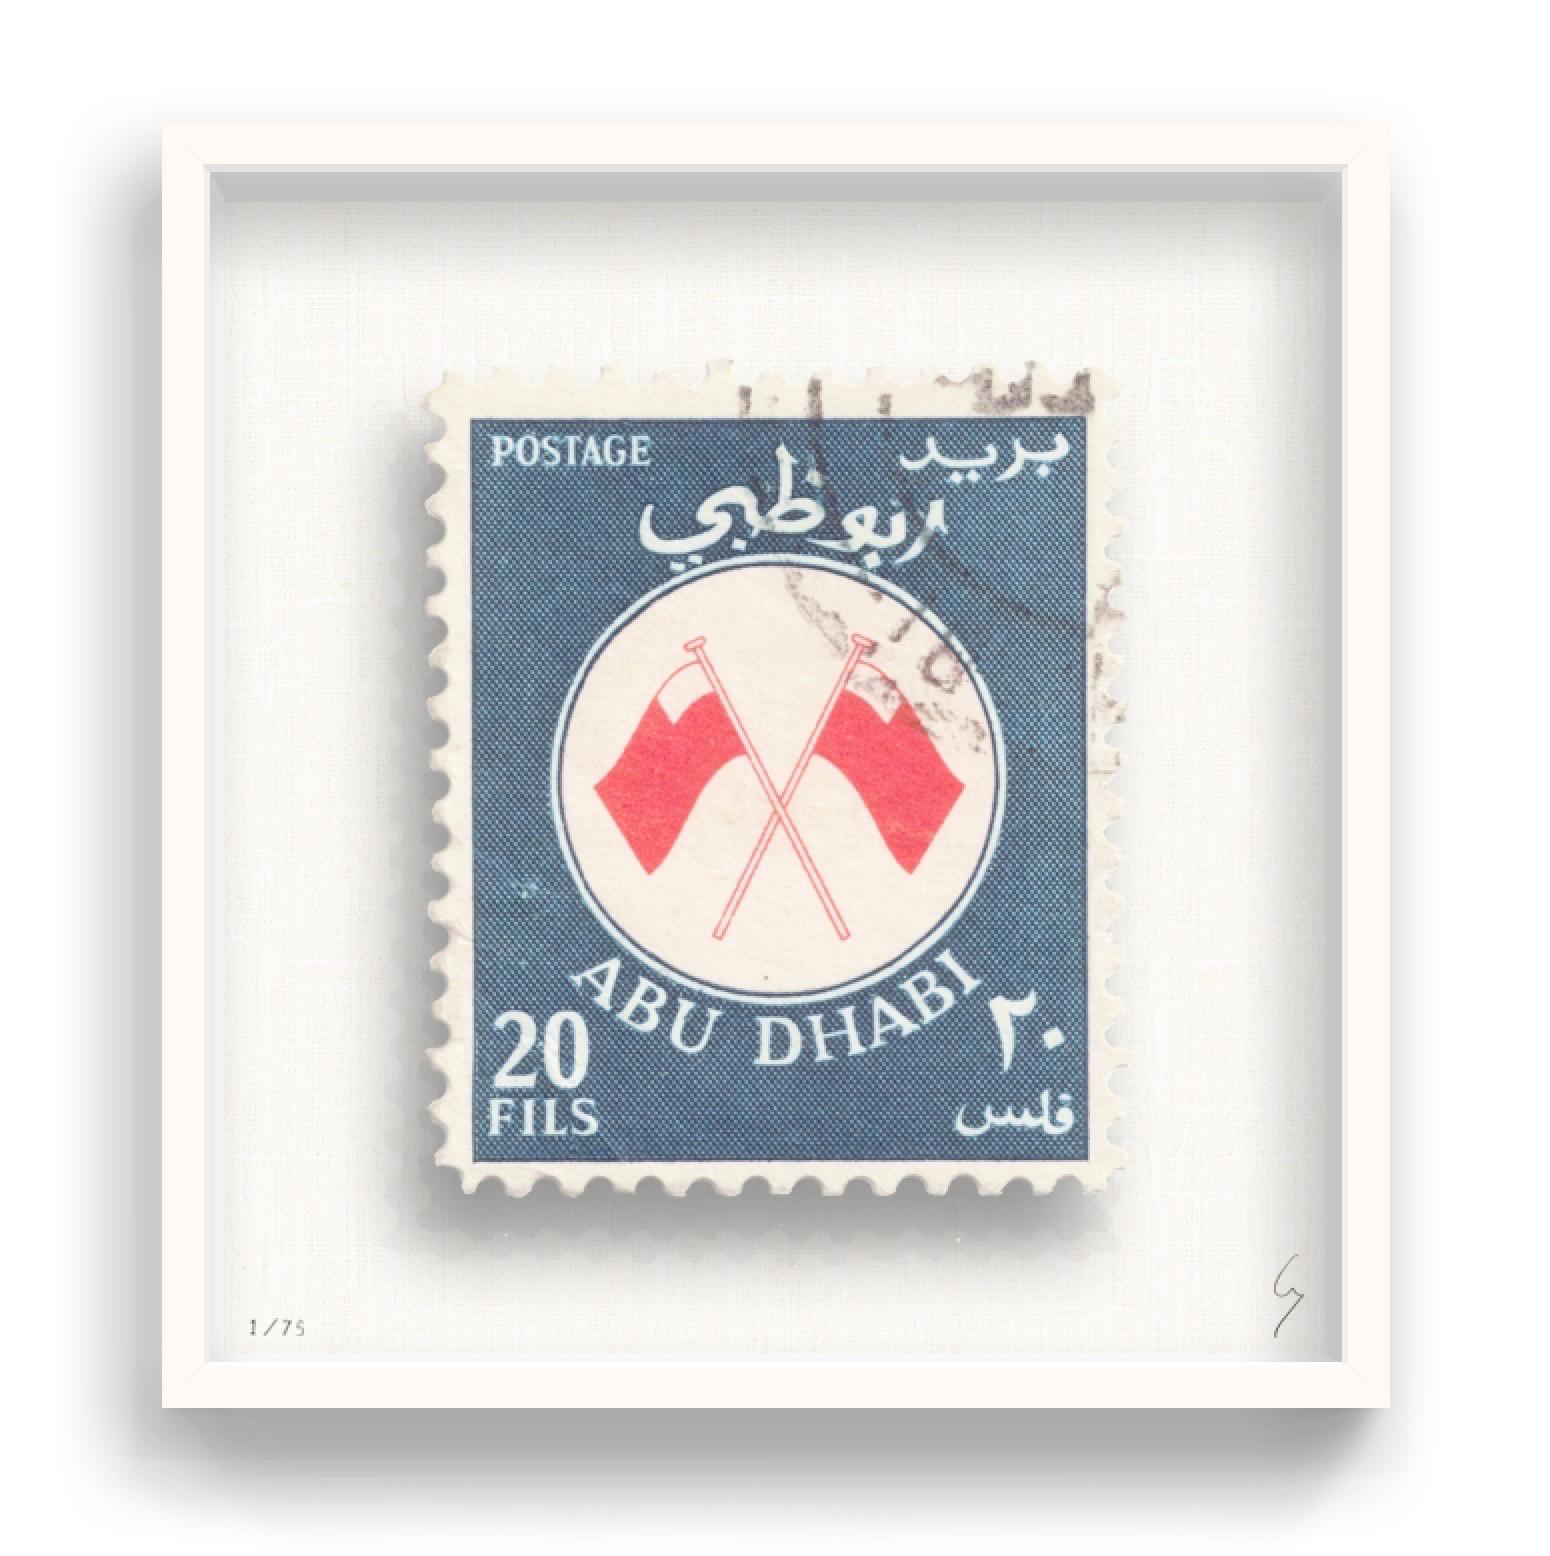 Guy Gee, Abu Dhabi (mittelgroß)

Handgravur auf 350gsm auf G.F Smith Karton
53 x 56cm (20 4/5 x 22 2/5 in)
Inklusive Rahmen 
Auflage von 75 

Jedes Kunstwerk von Guy wurde auf der Grundlage einer Originalbriefmarke digital nachgebildet. Das von Hand